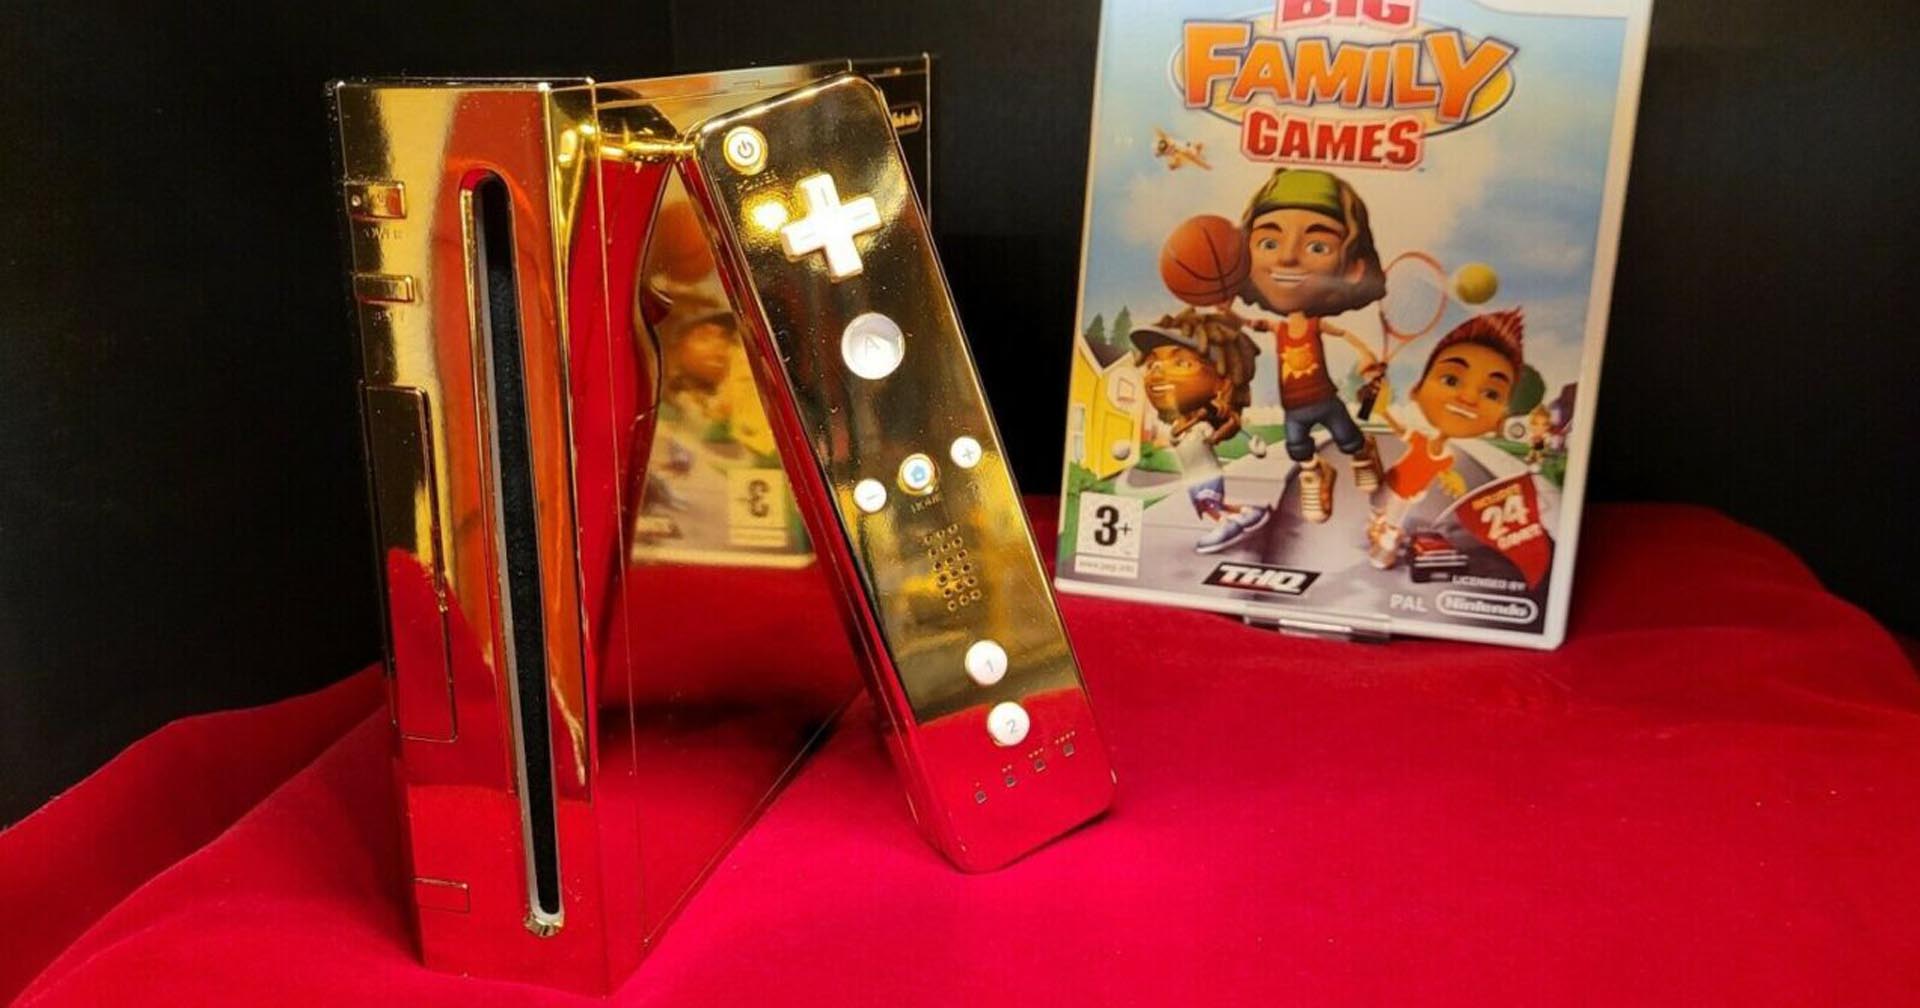 เครื่องเกม Wii สีทอง ที่ออกแบบเพื่อสมเด็จพระราชินีเอลิซาเบธถูกนำมาวางจำหน่ายแล้ว